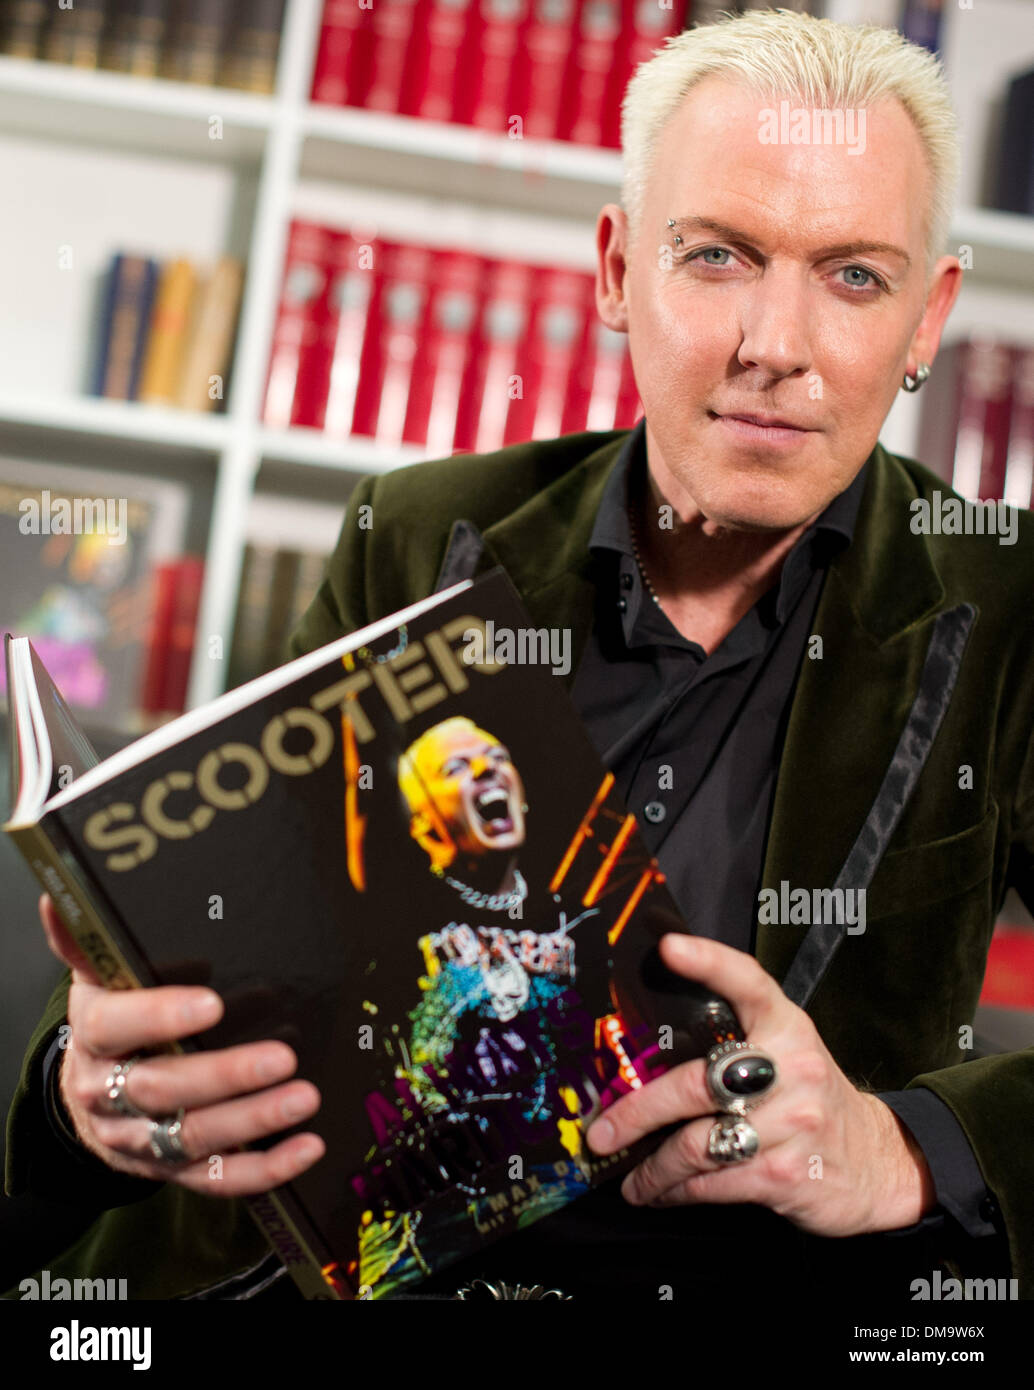 Berlín, Alemania. 13 dic, 2013. El cantante de la banda Scooter, H.P.  Baxxter, sostiene su libro 'scooter: Siempre Hardcore' tras una entrevista  en Berlín, Alemania, el 13 de diciembre de 2013. Foto: